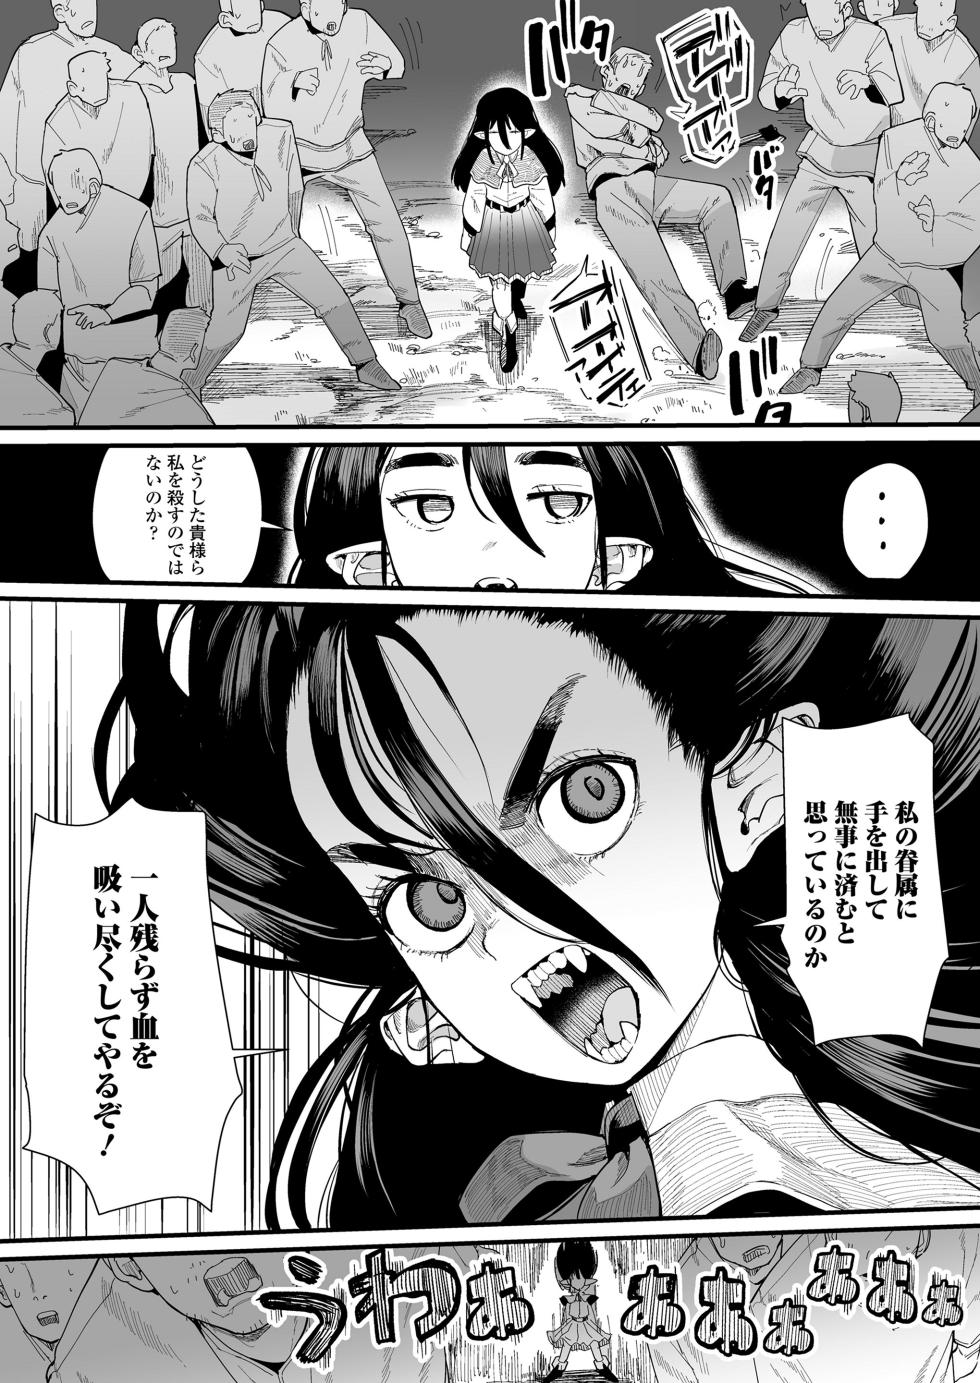 Towako 15 [Digital] - Page 36